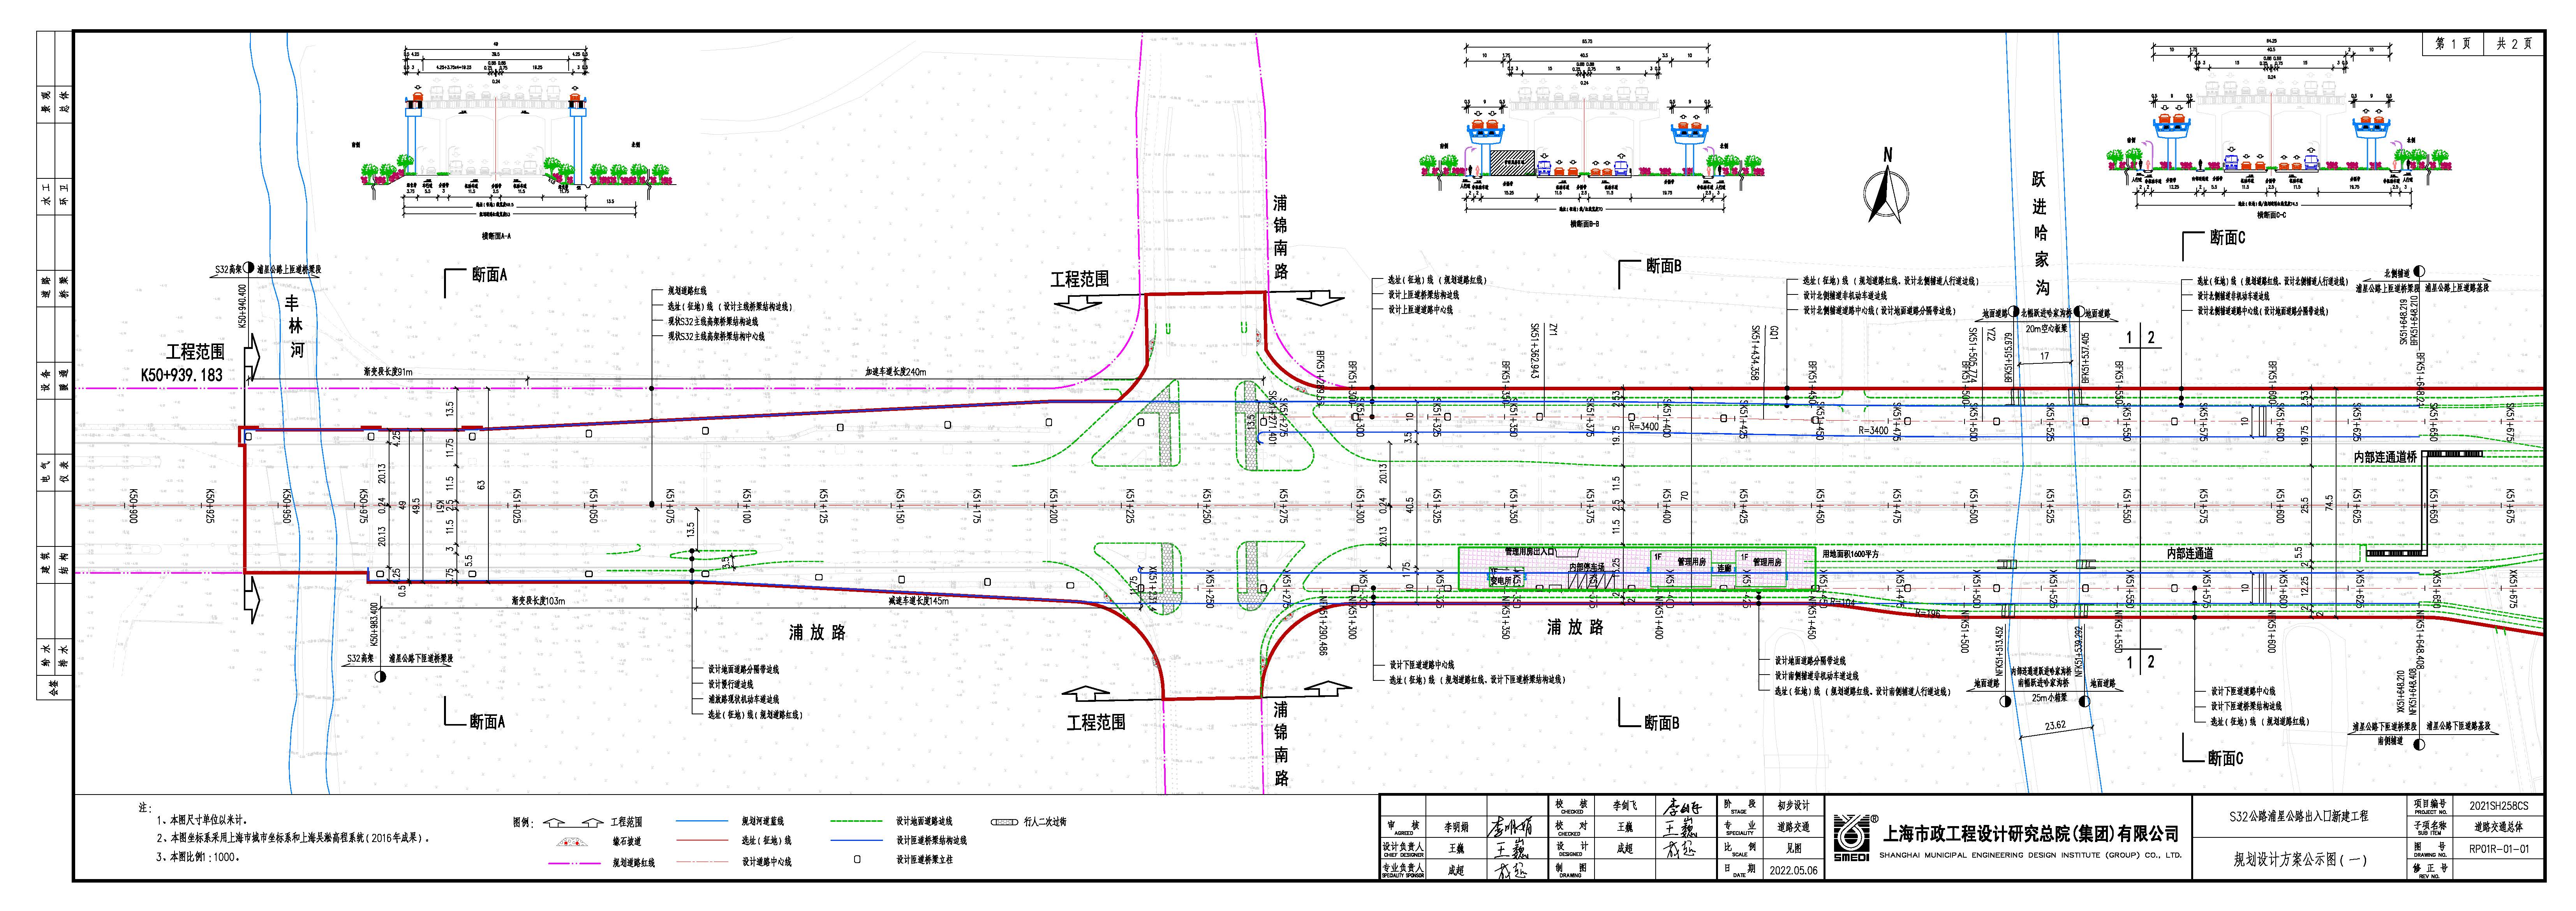 浦星公路高架规划情况图片